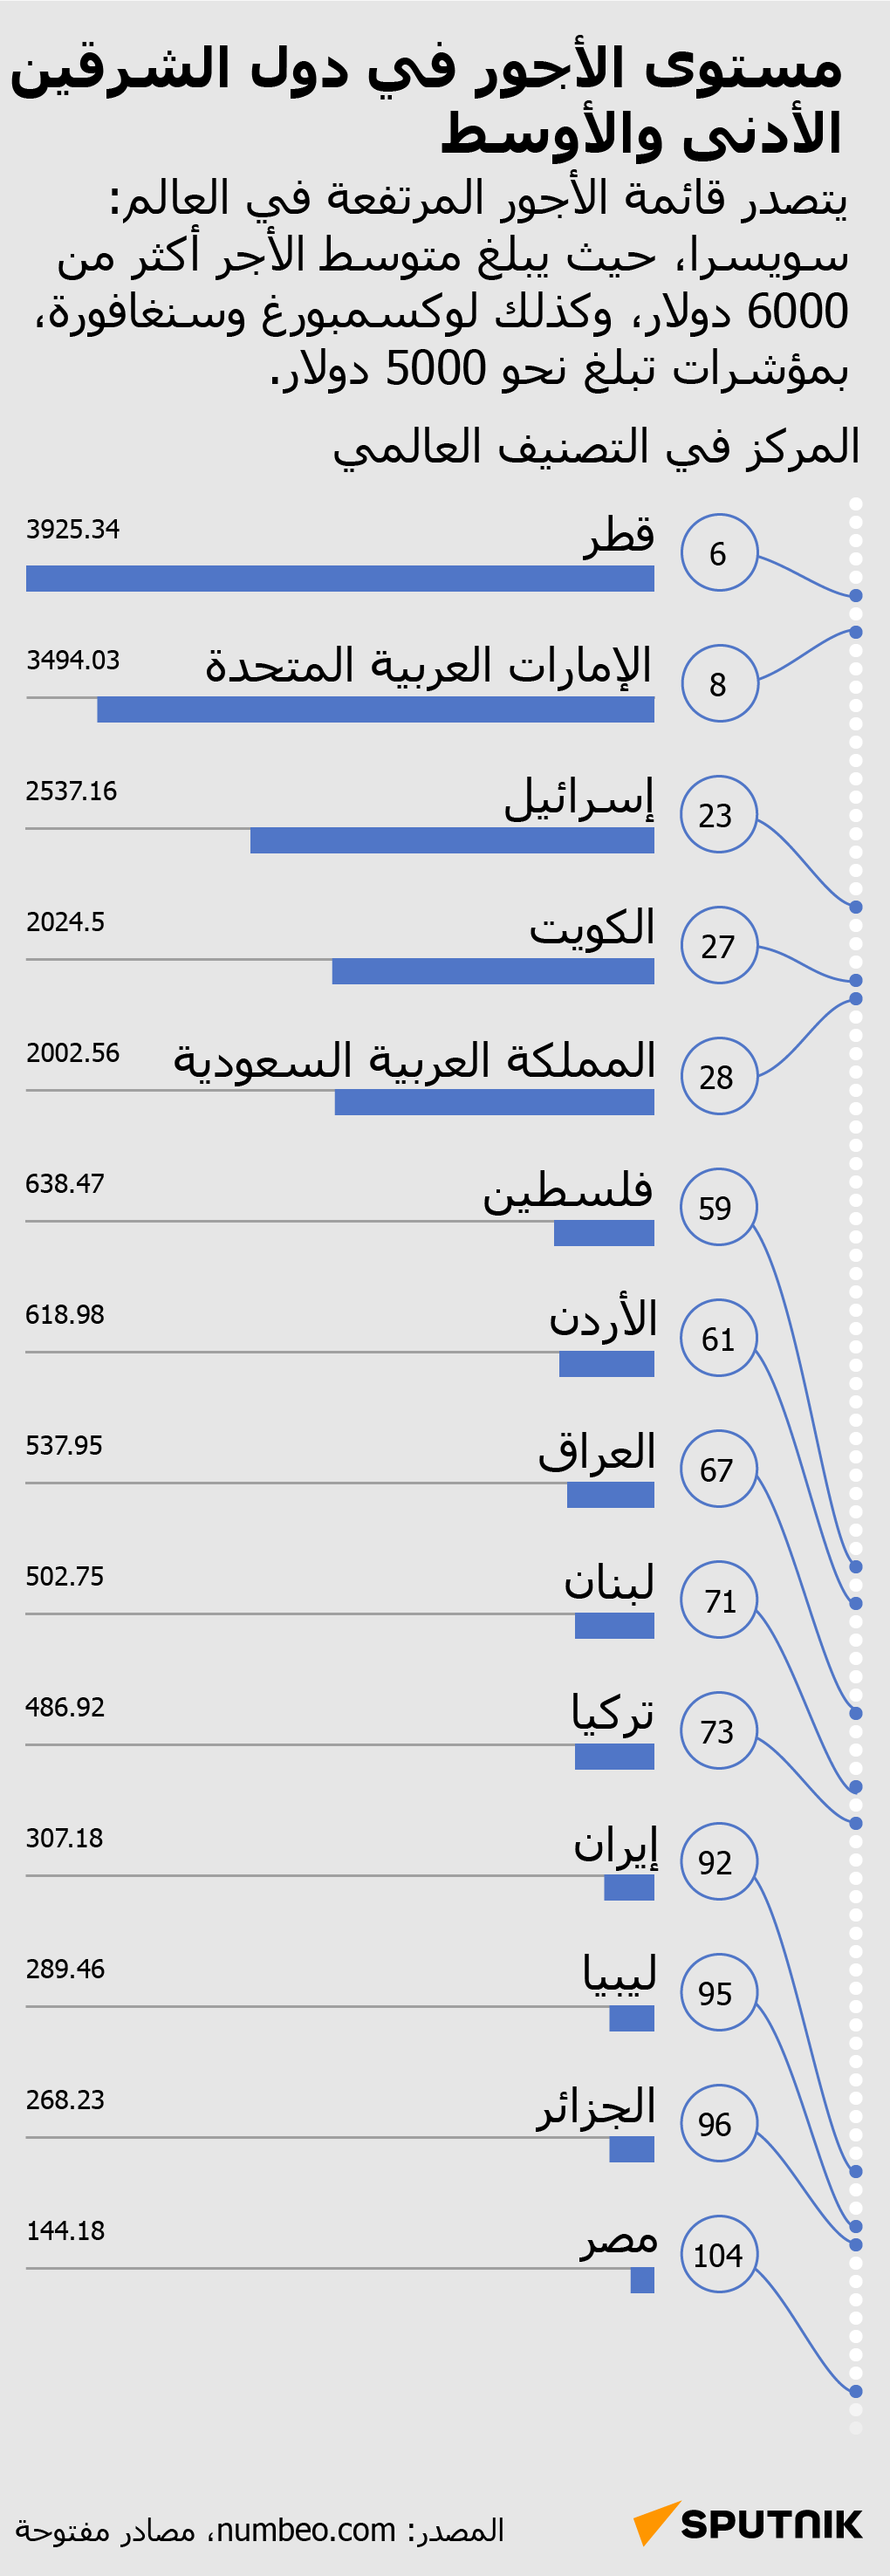 مستوى الأجور في دول الشرقين الأدنى والأوسط - سبوتنيك عربي